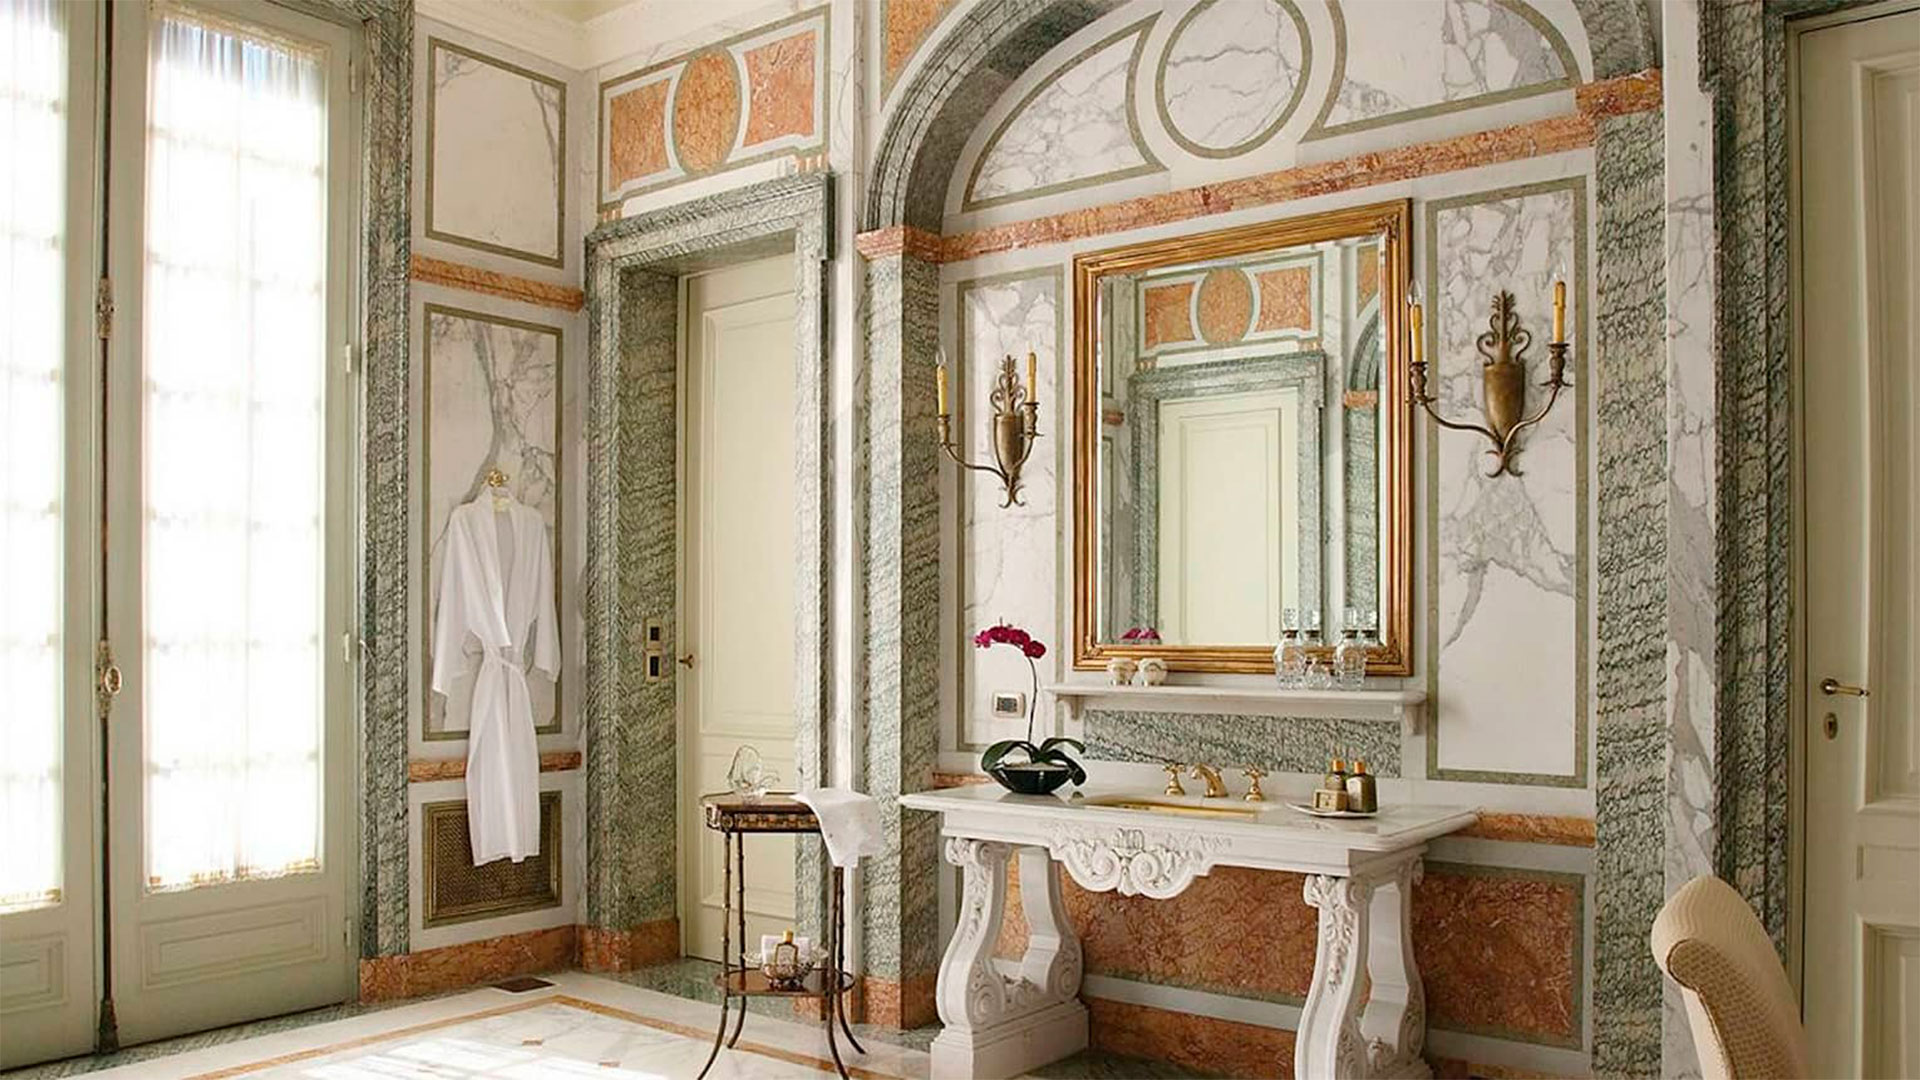 El baño es de 30 metros y recubierto en mármoles italianos con canillas de oro macizo